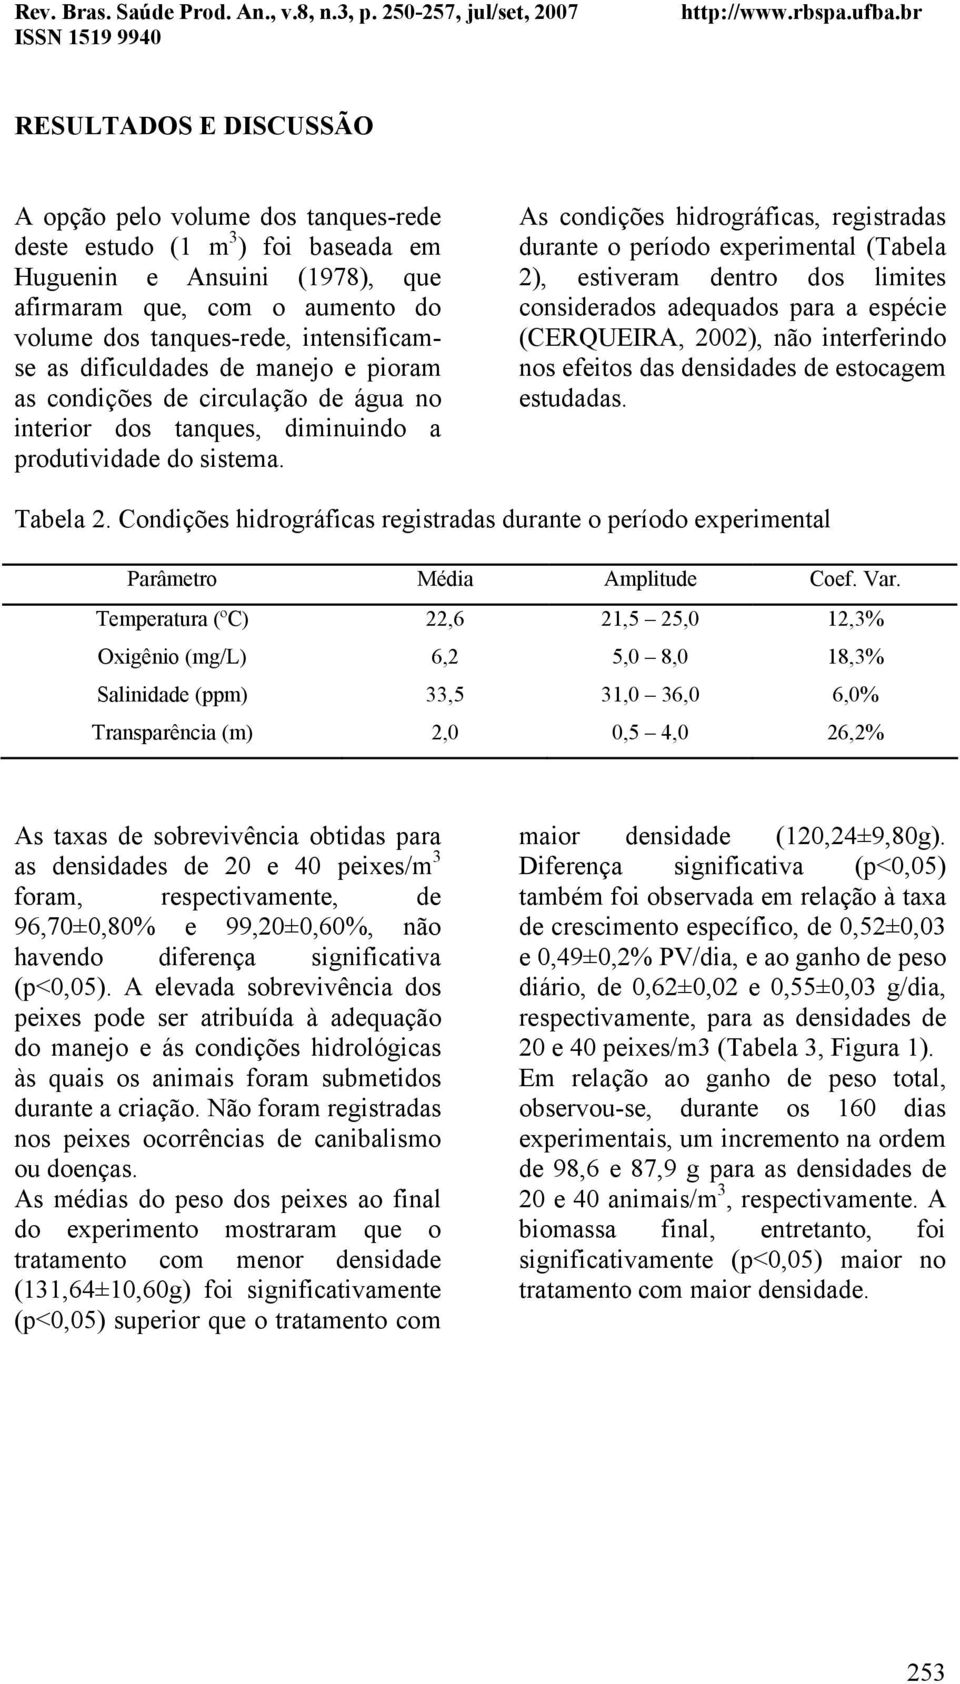 As condições hidrográficas, registradas durante o período experimental (Tabela 2), estiveram dentro dos limites considerados adequados para a espécie (CERQUEIRA, 2002), não interferindo nos efeitos